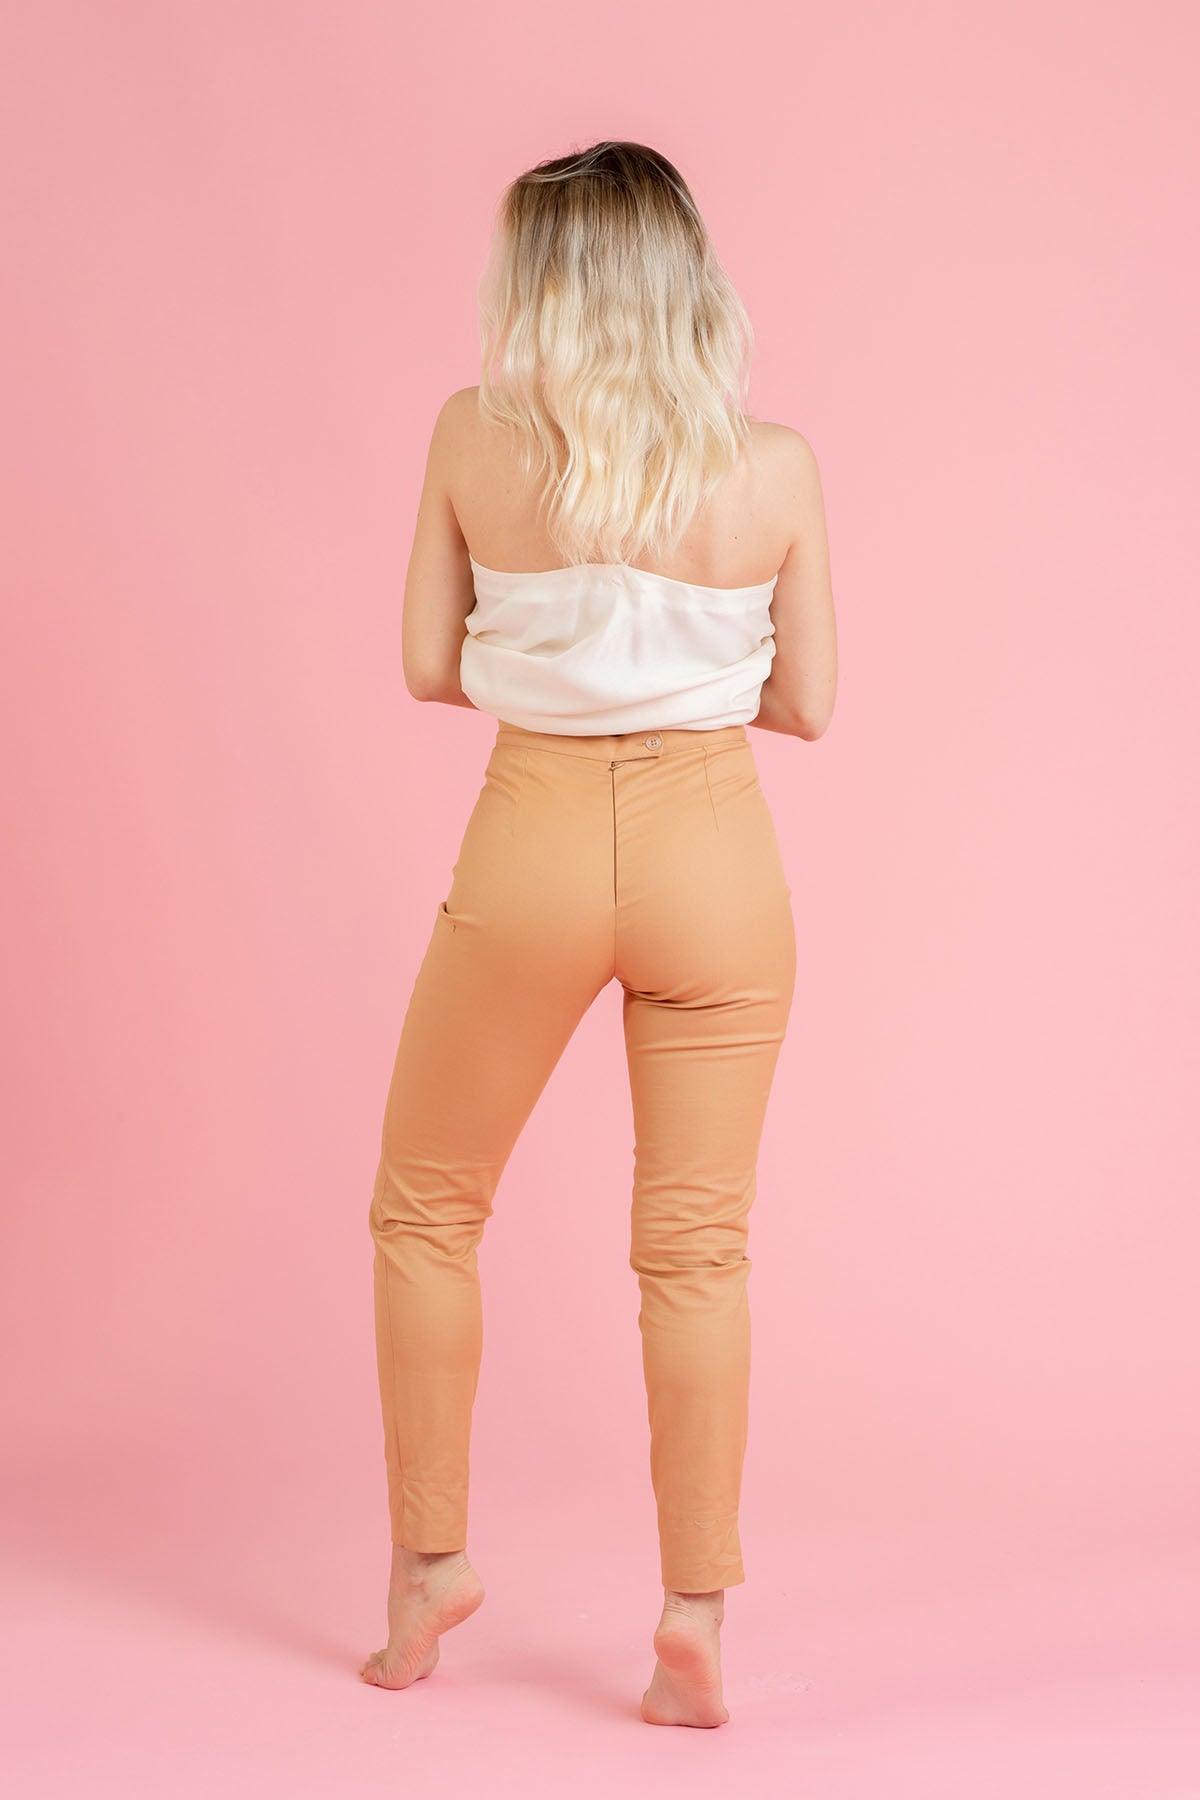 Pantalone Michela cotone biologico linea dritta moda sostenibile etica artigianale brand malia lab abbigliamento ecosostenibile vista posteriore